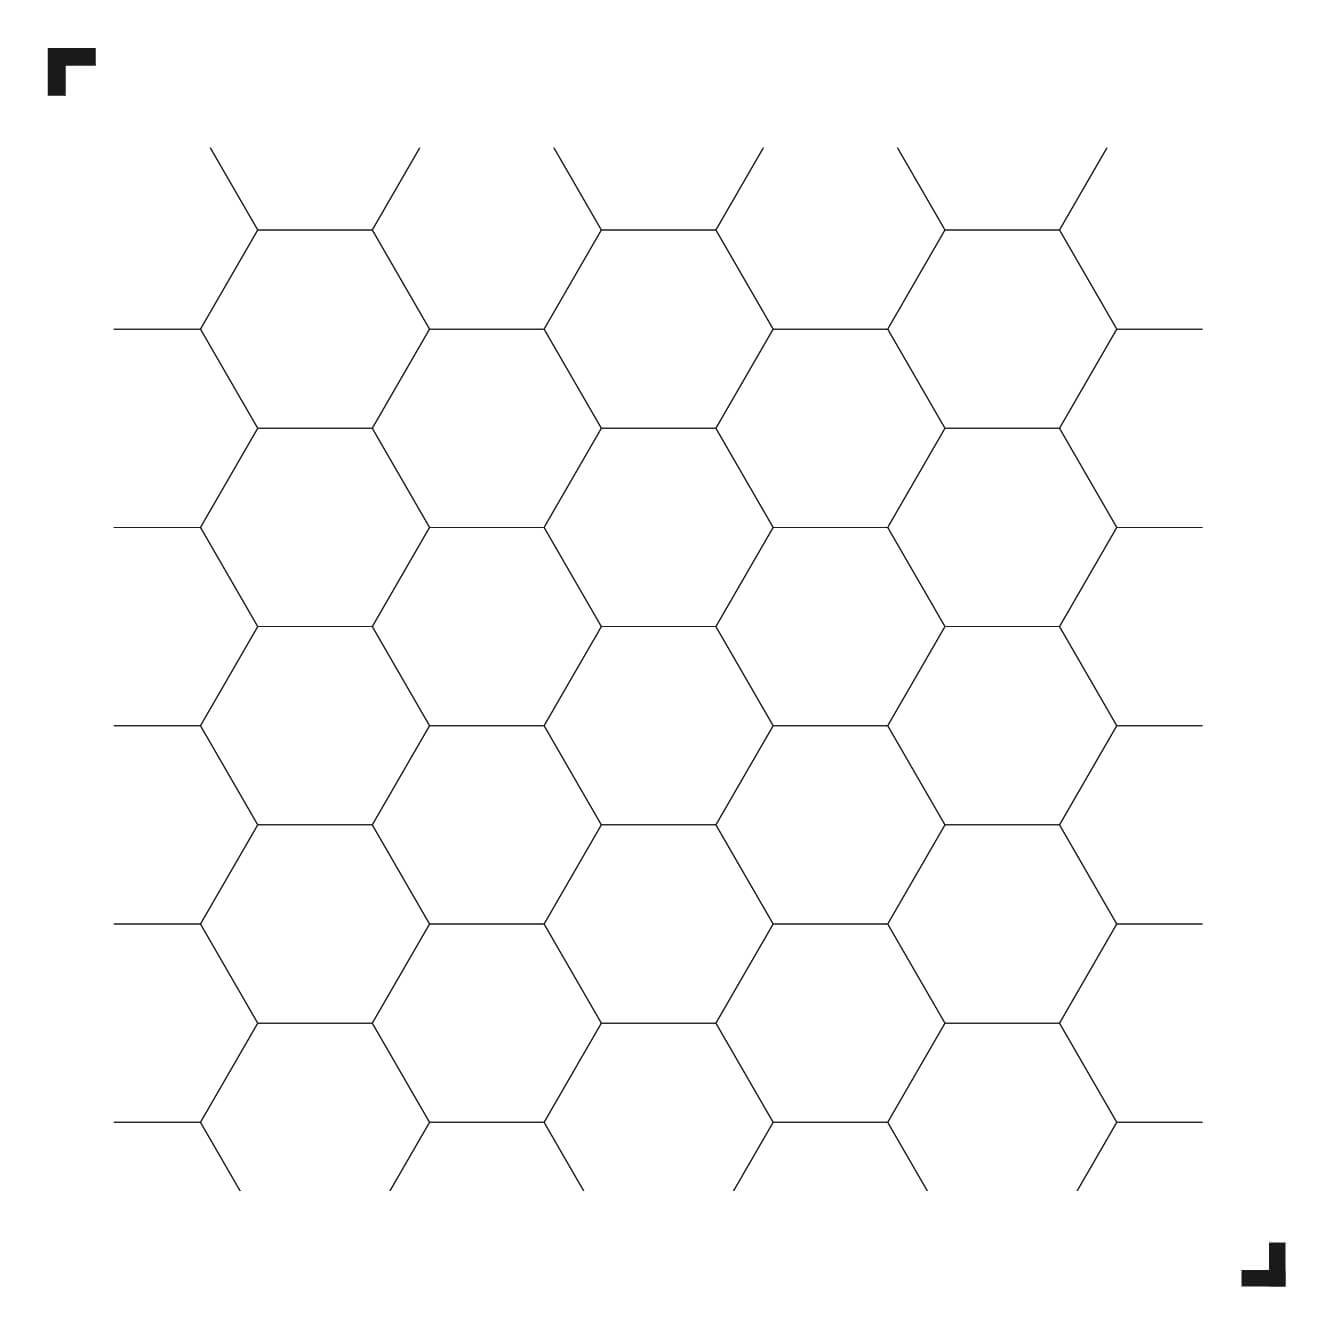 zwart-wit tekening van het Big Hexagon patroon - Moduleo Moods - luxe vinyl tegels - Creatieve vloeren